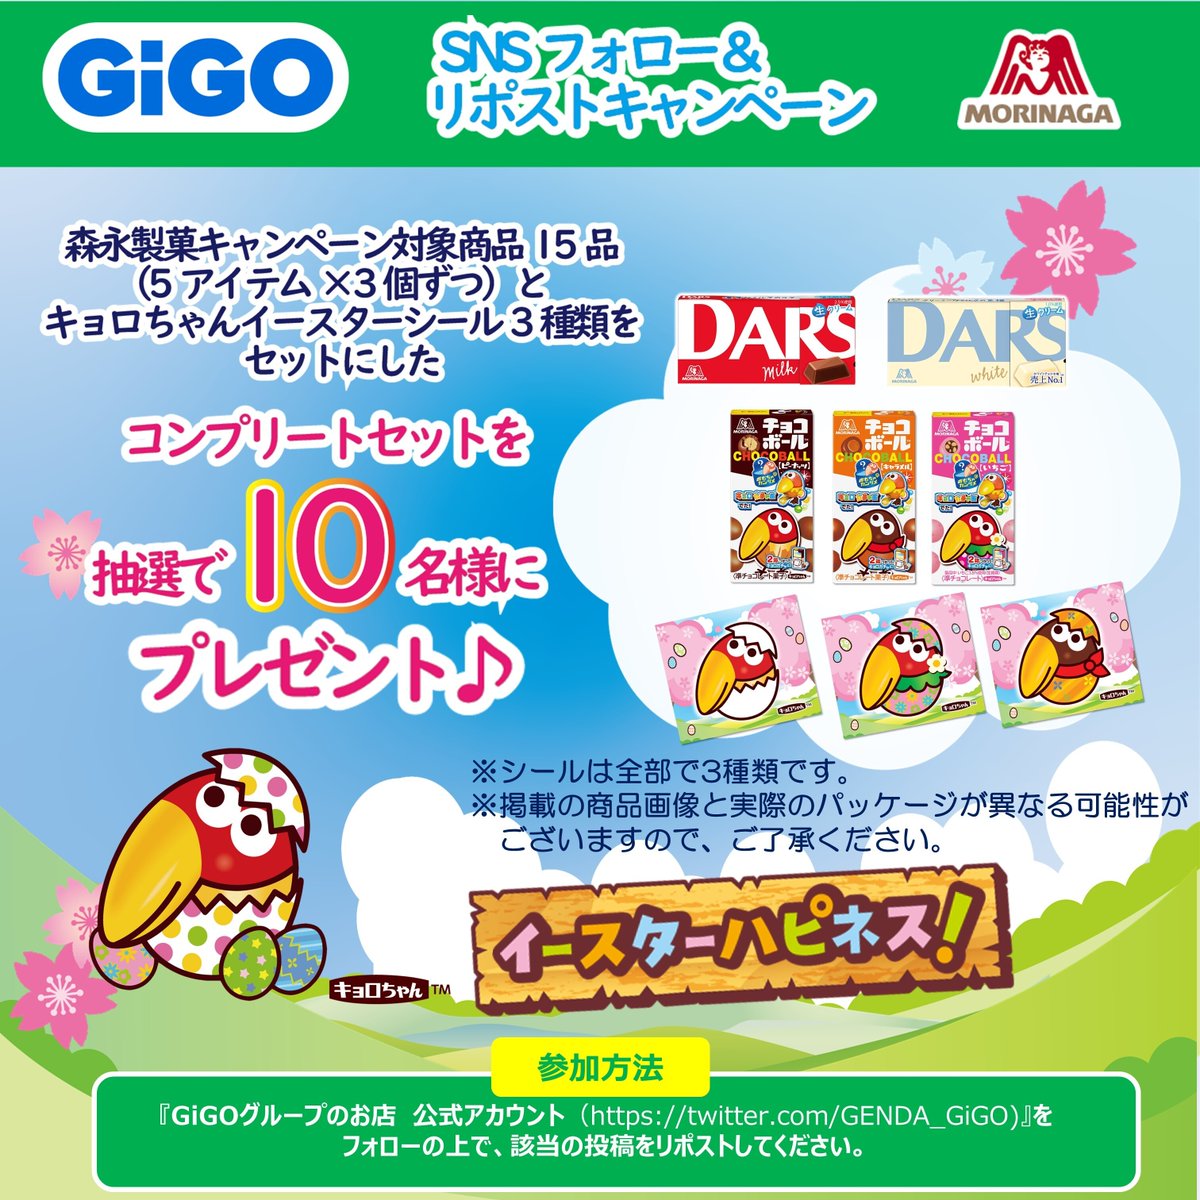 5/2から全国の #GiGO さんでキャンペーン 期間中「#チョコボール」「#ダース」のブースで遊ぶと「キョロちゃんイースターシール」をプレゼント🎁 ぜひお近くのお店に遊びに行ってみてね♪ GiGOさん公式アカウント@GENDA_GiGOではリポストキャンペーンも実施中♪ 【実施店舗】 tempo.gendagigo.jp/cts/gigo_easte…